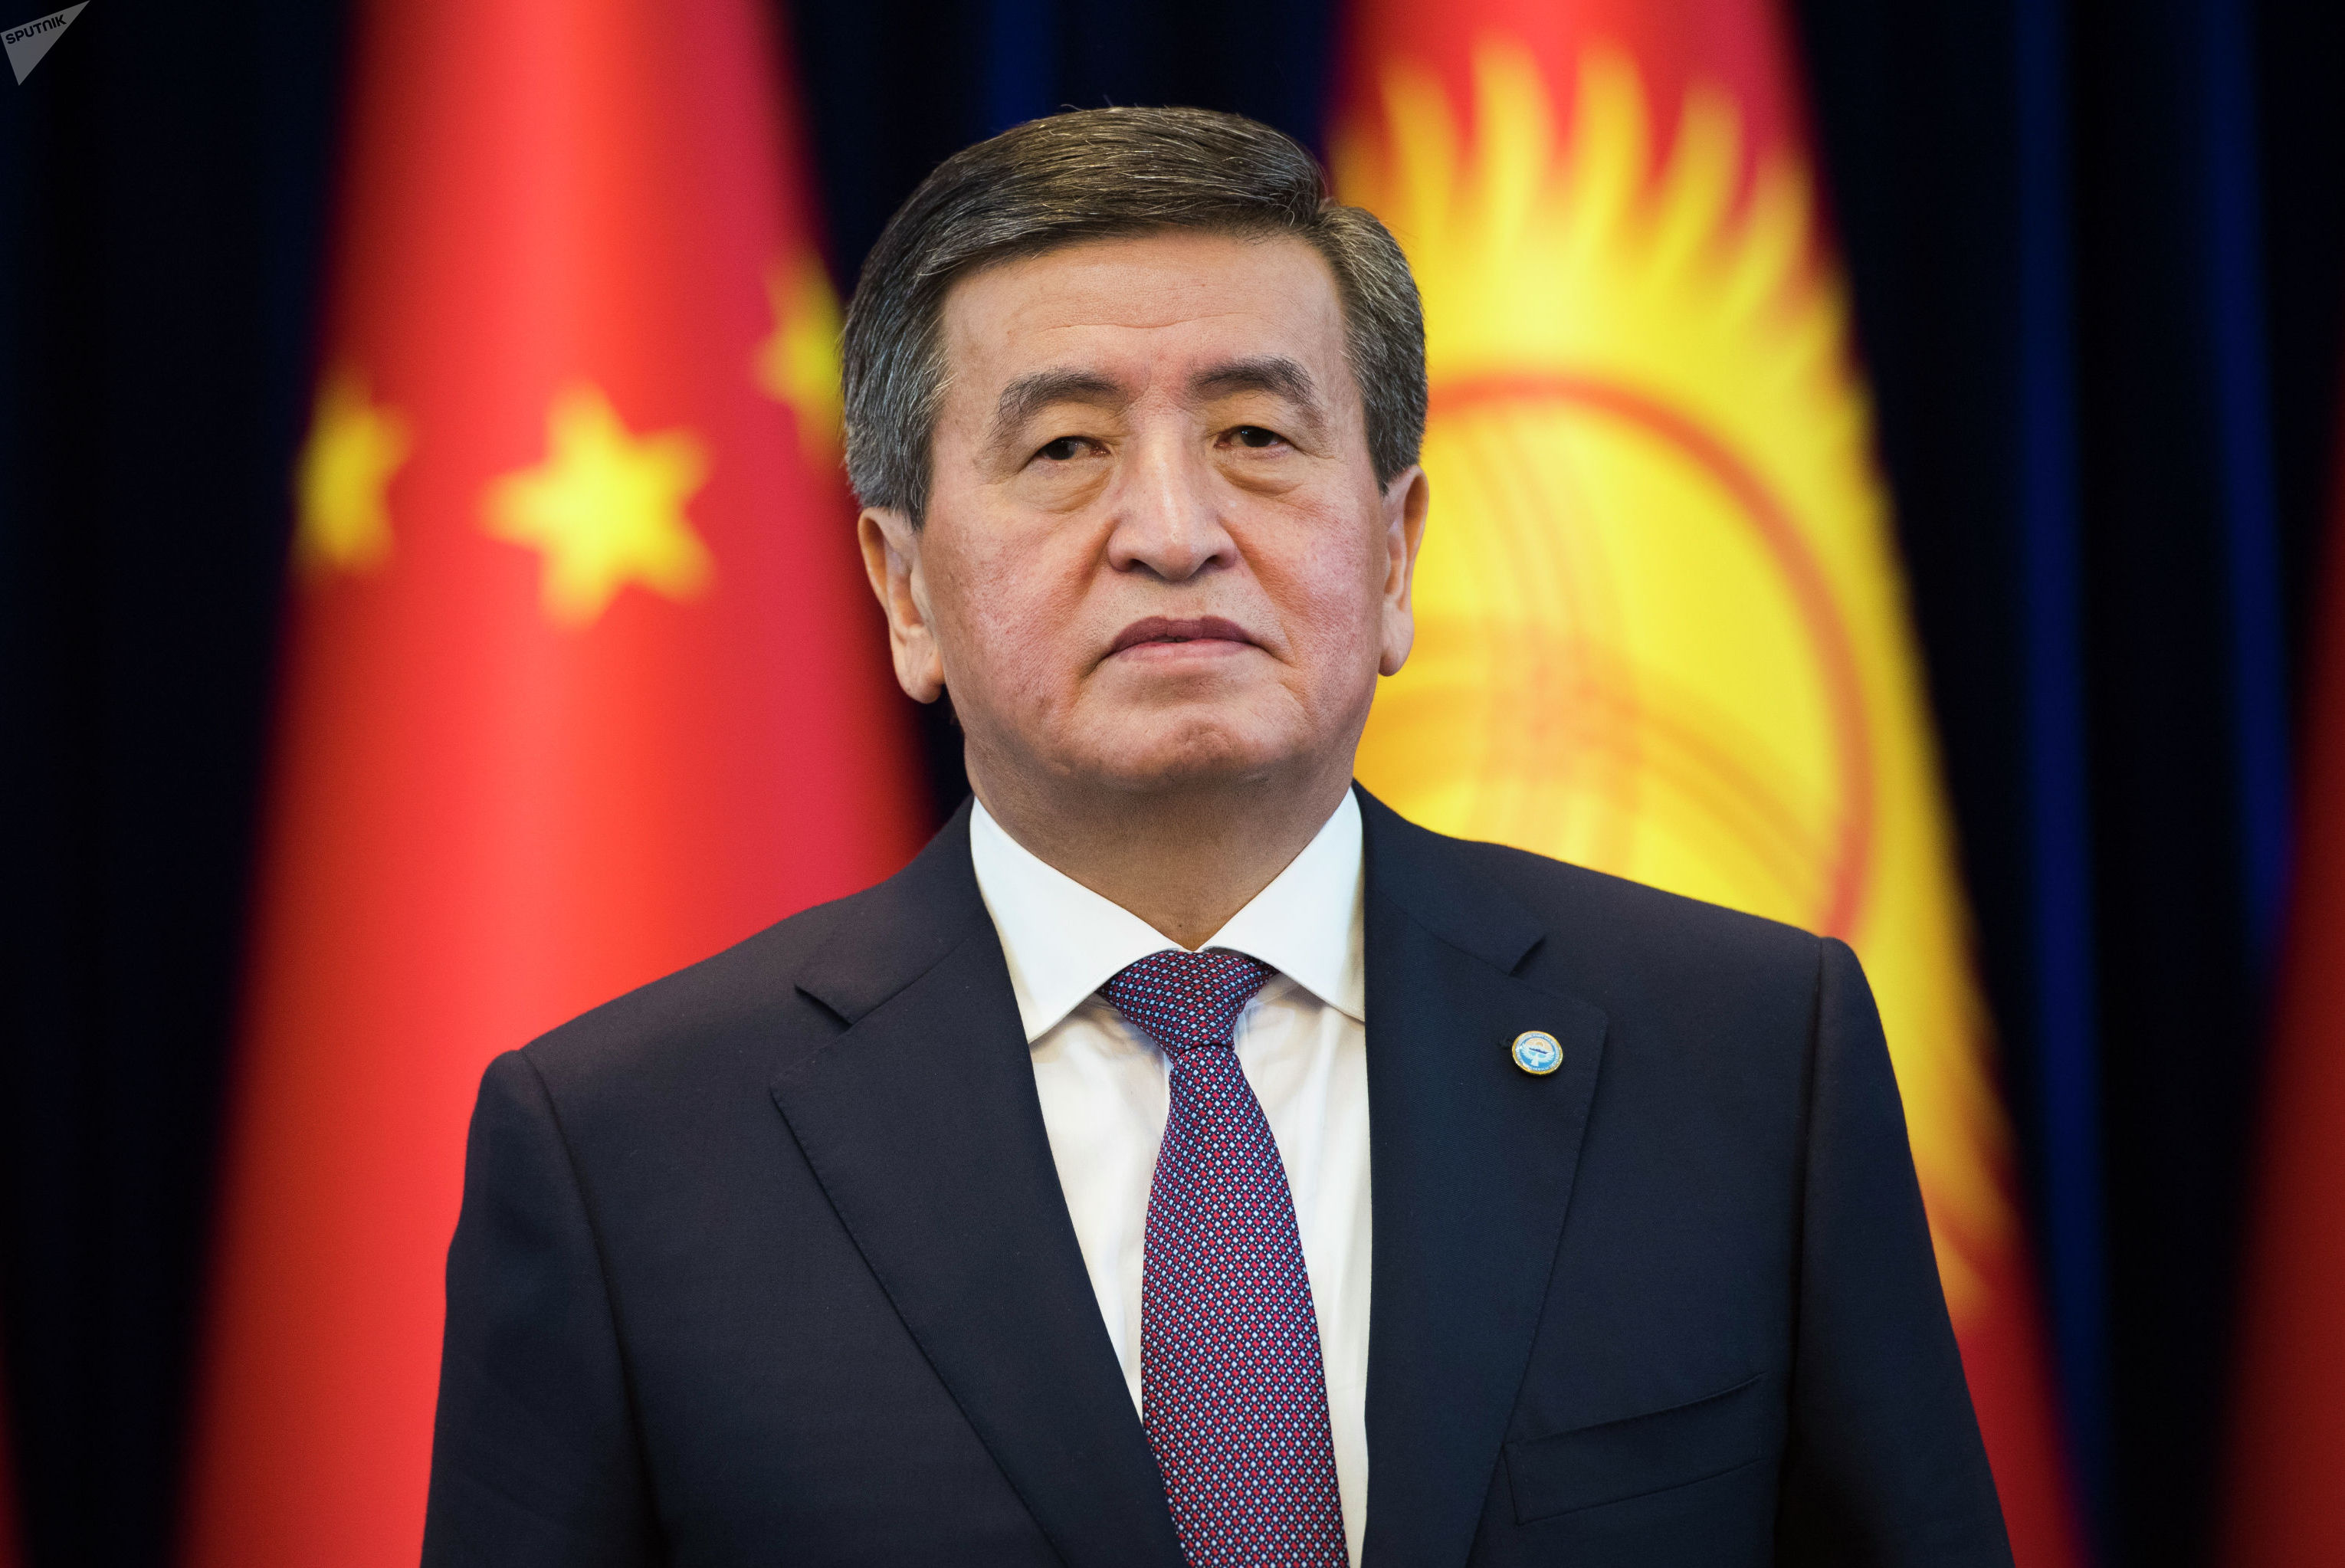 The President of Kyrgyzstan expresses condolences over plane crash